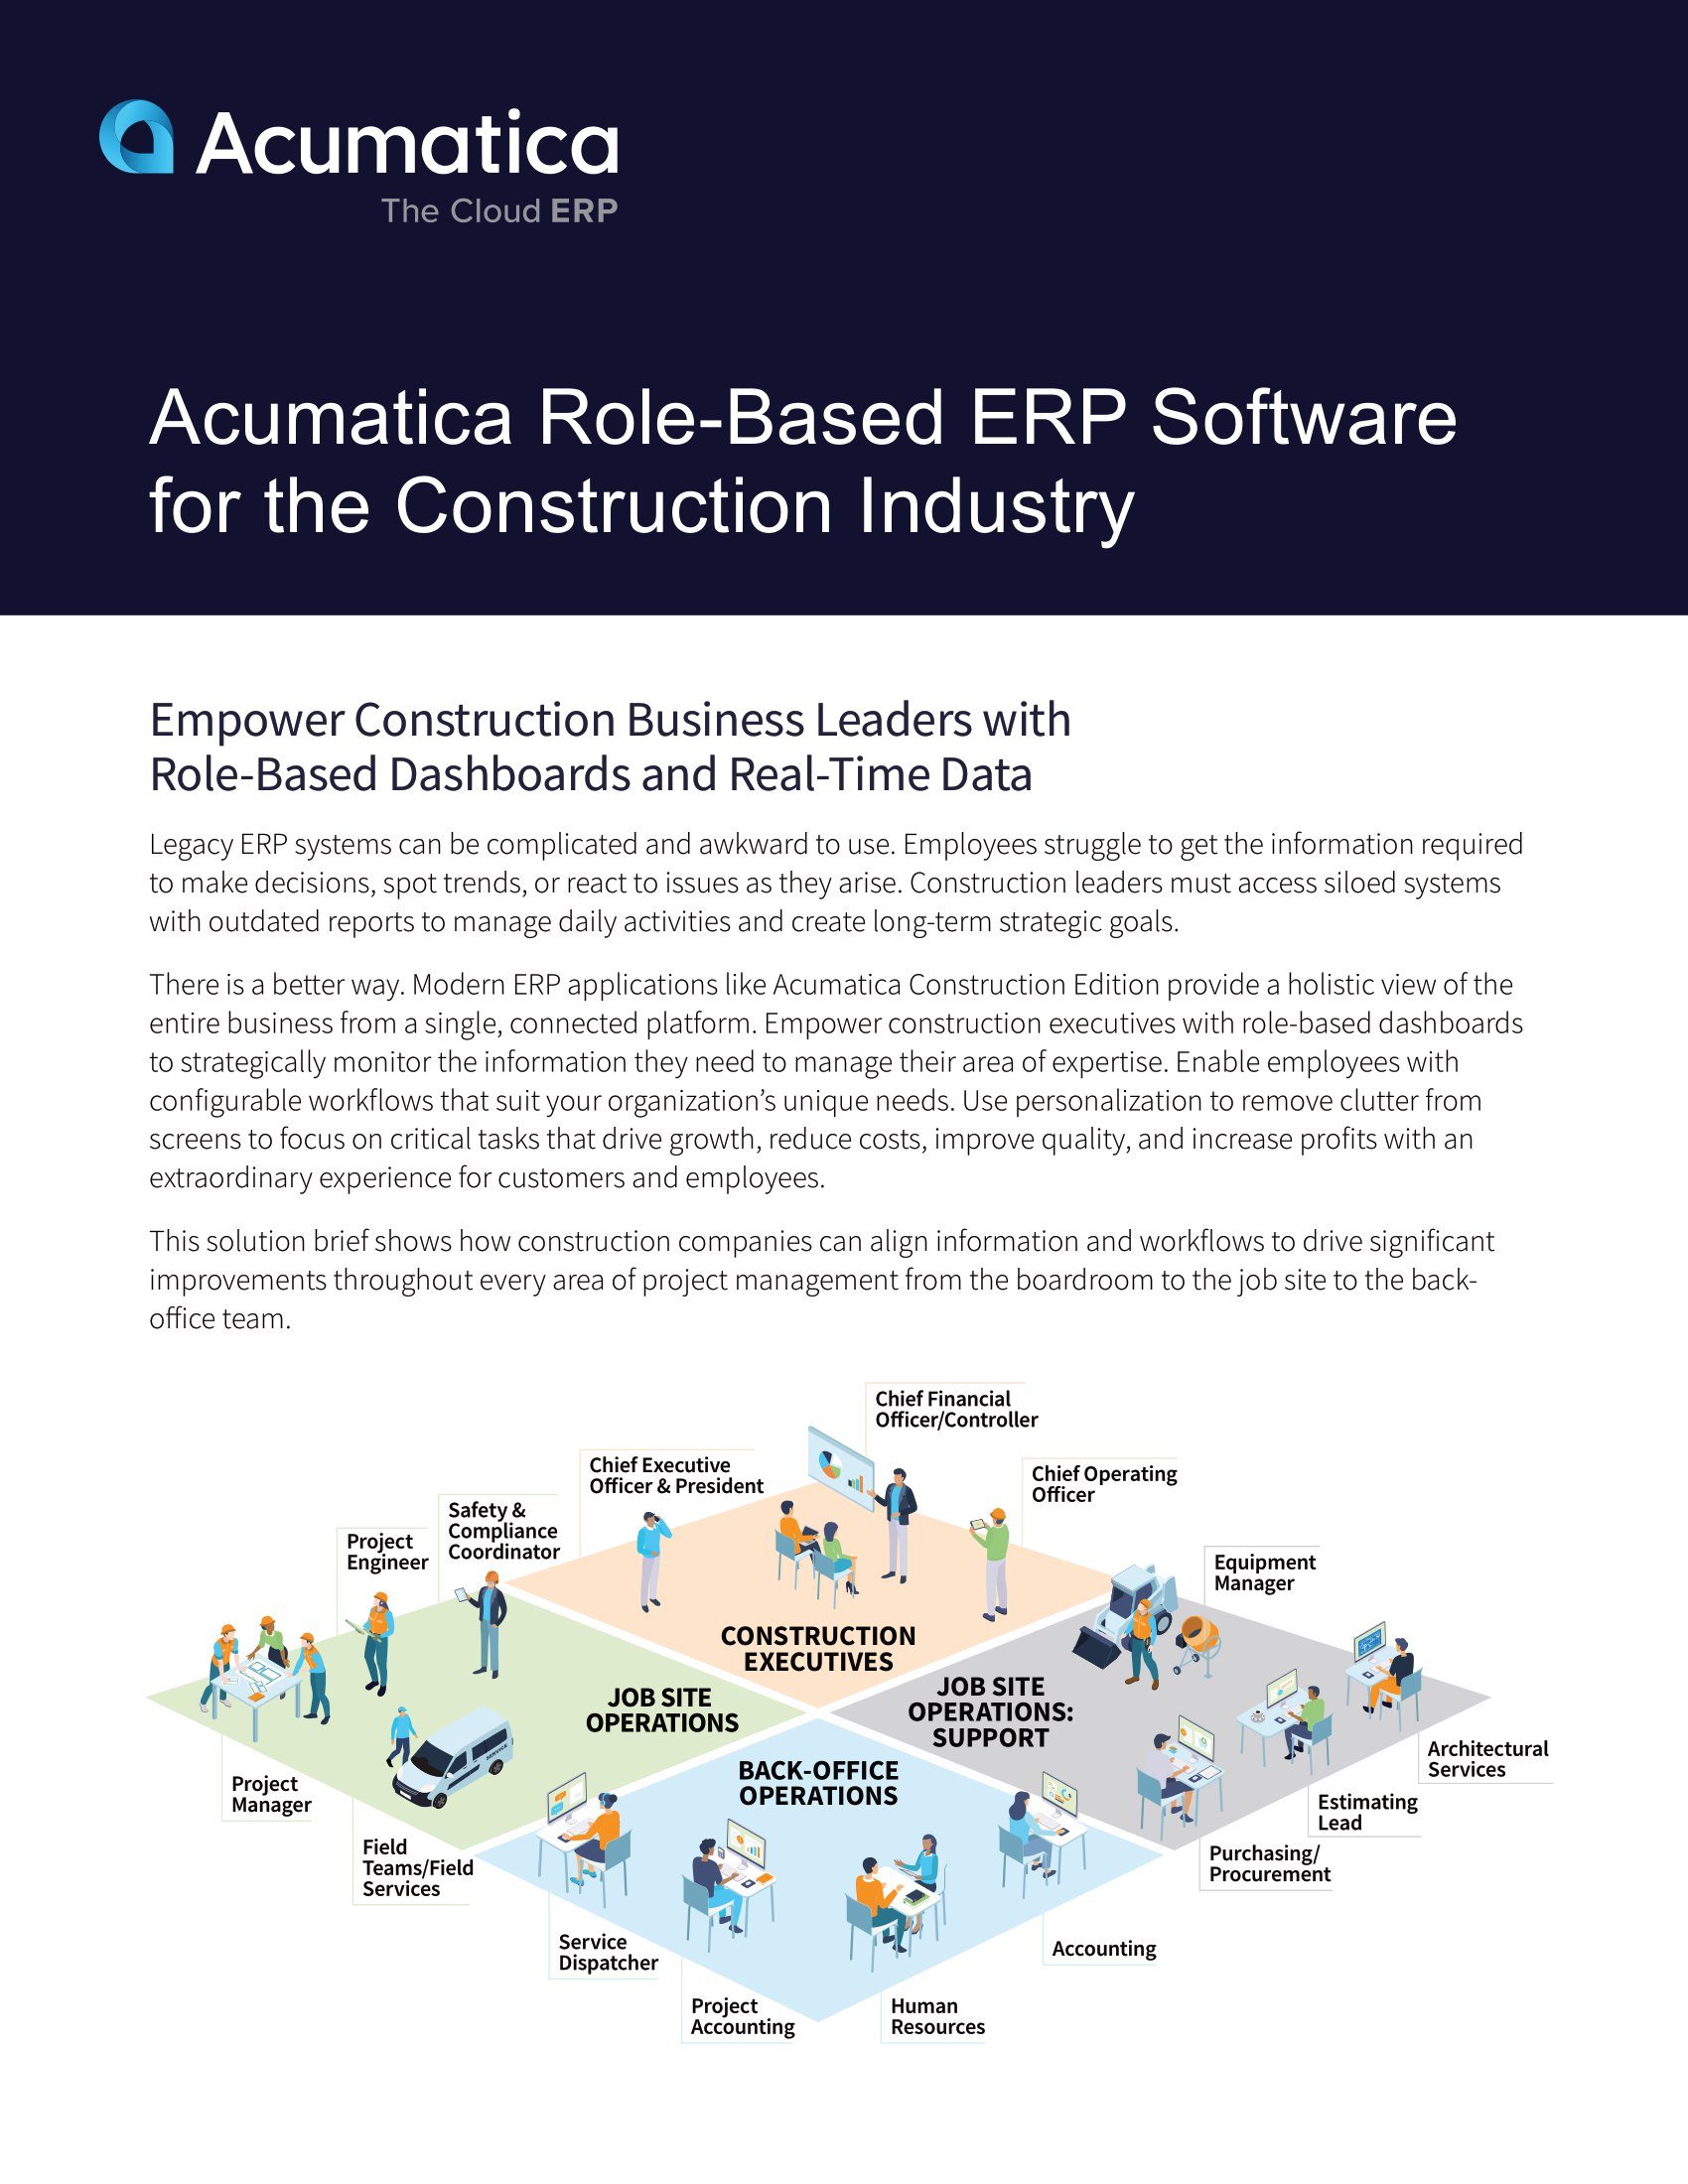 Plusieurs rôles de construction ne nécessitent qu’une seule plate-forme ERP